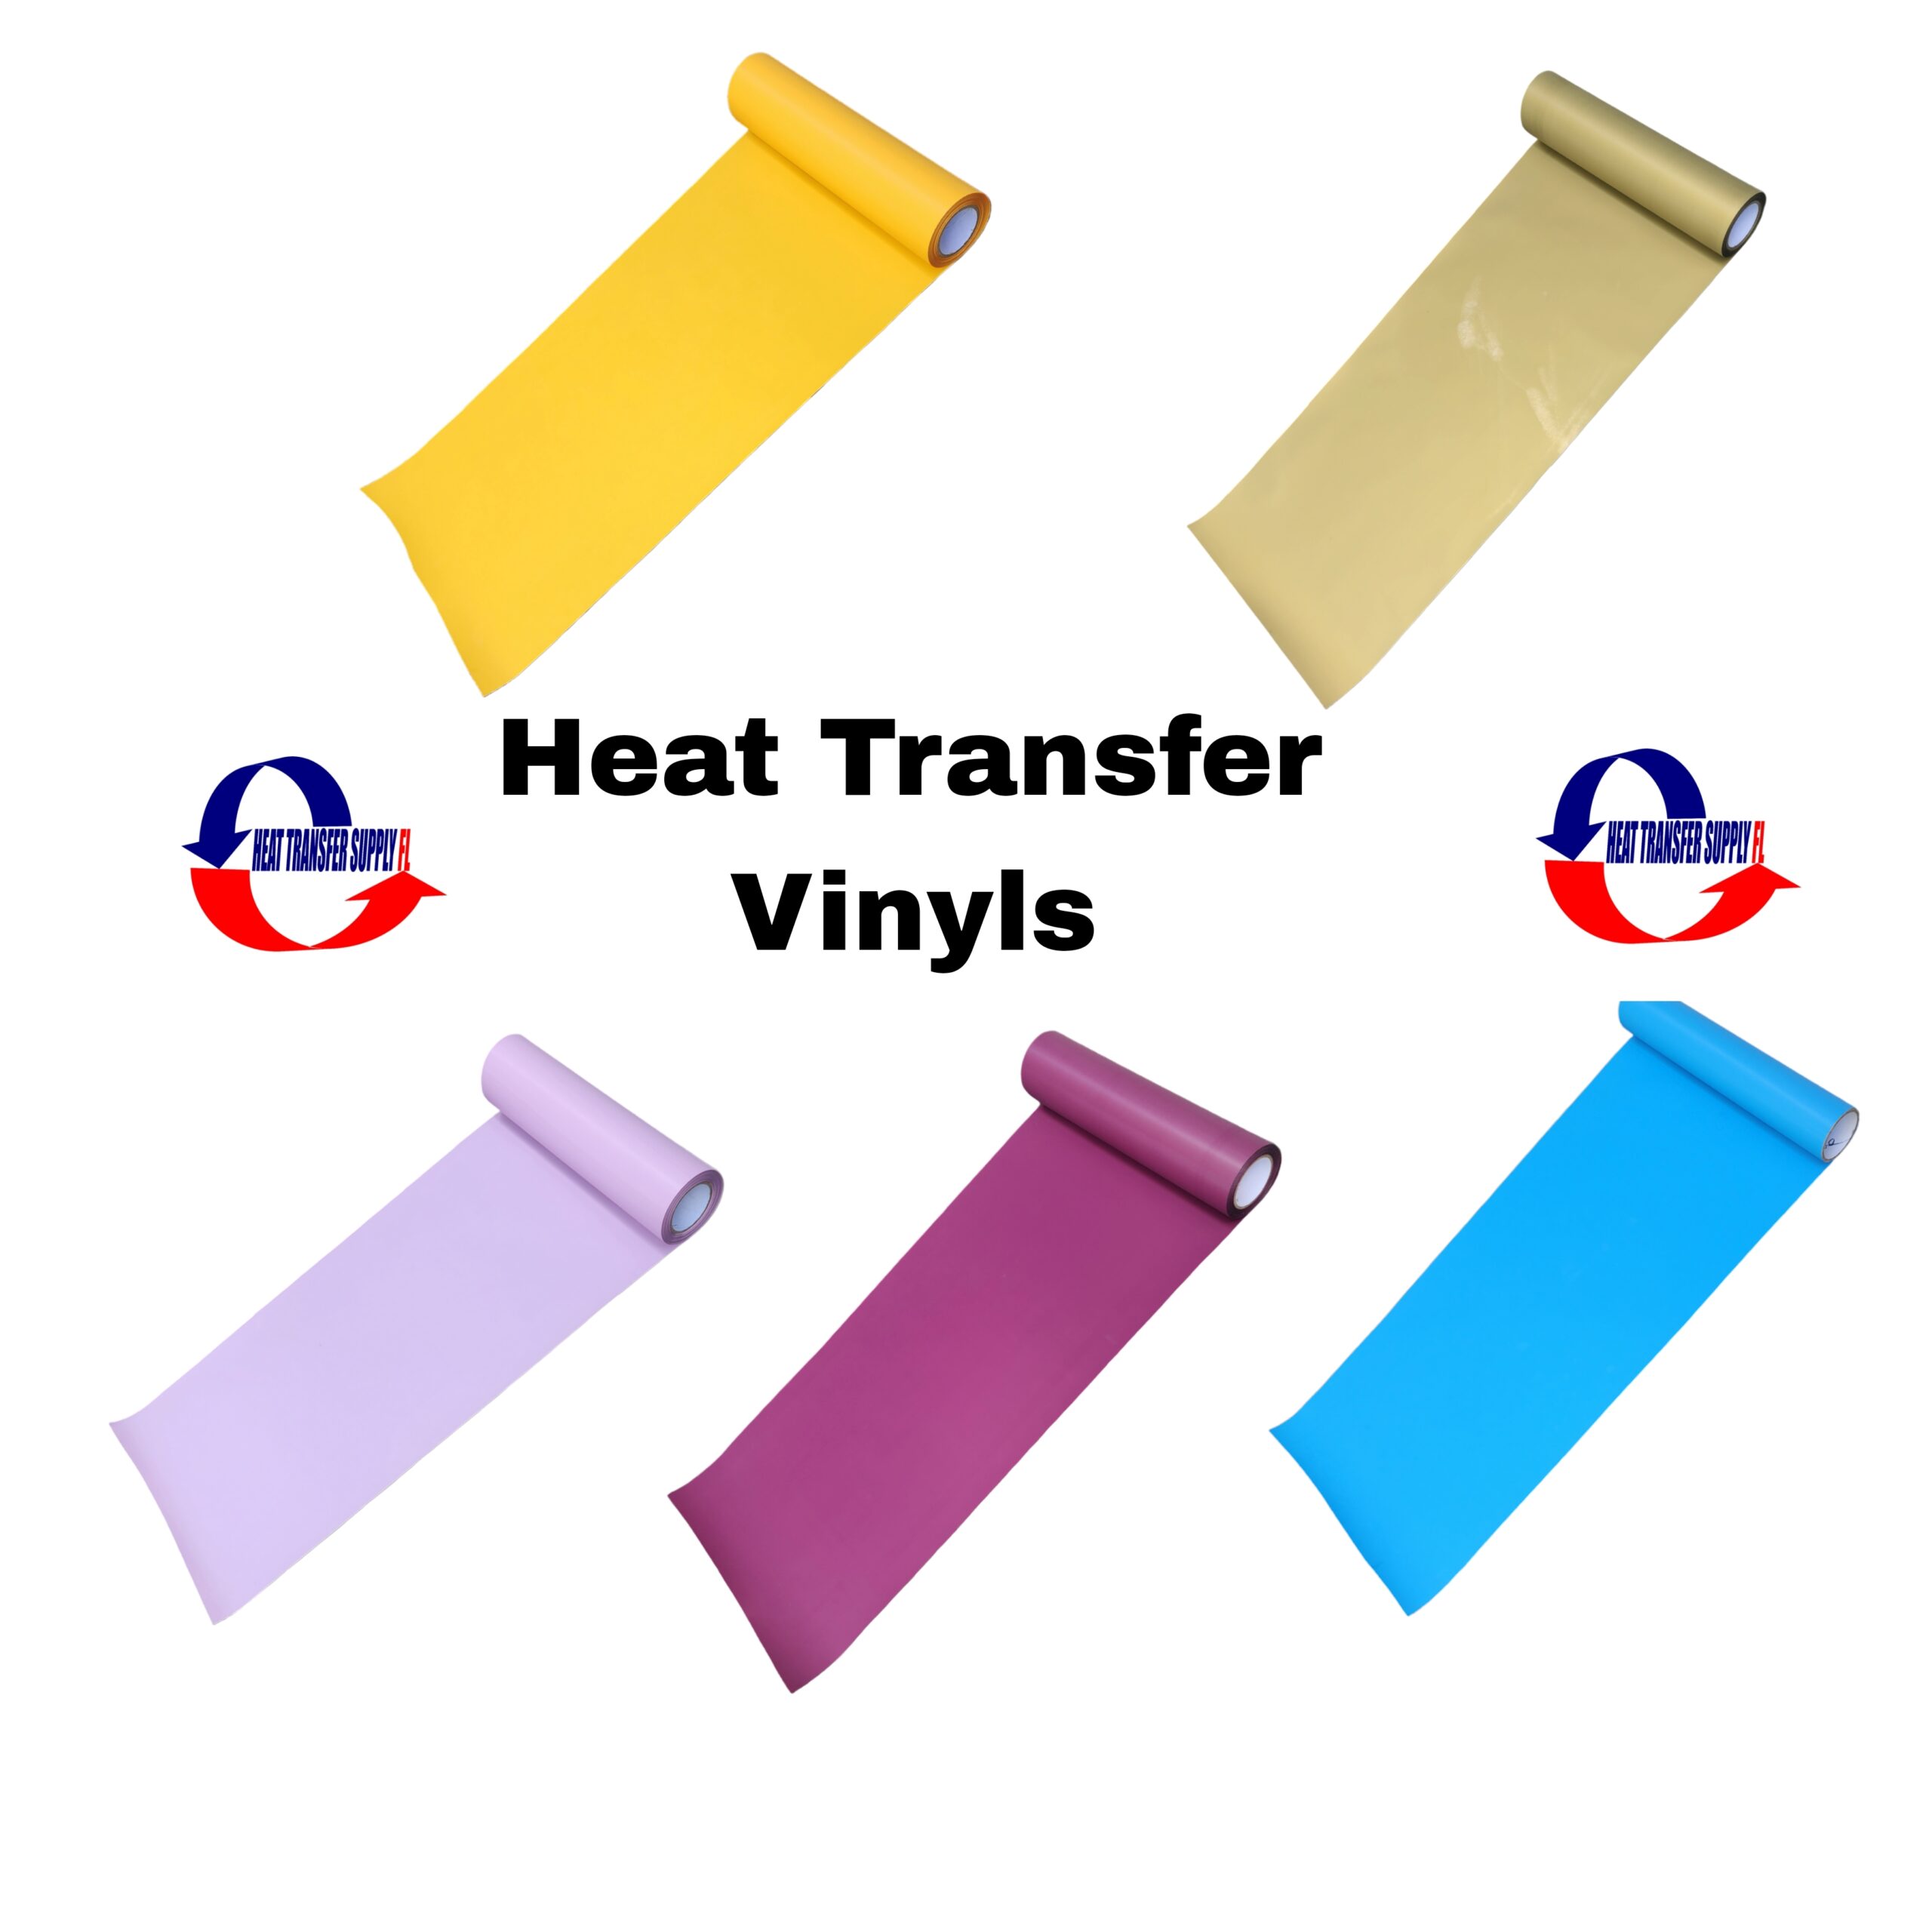 Mini Heat Heat Press - HEAT TRANSFER SUPPLYFL